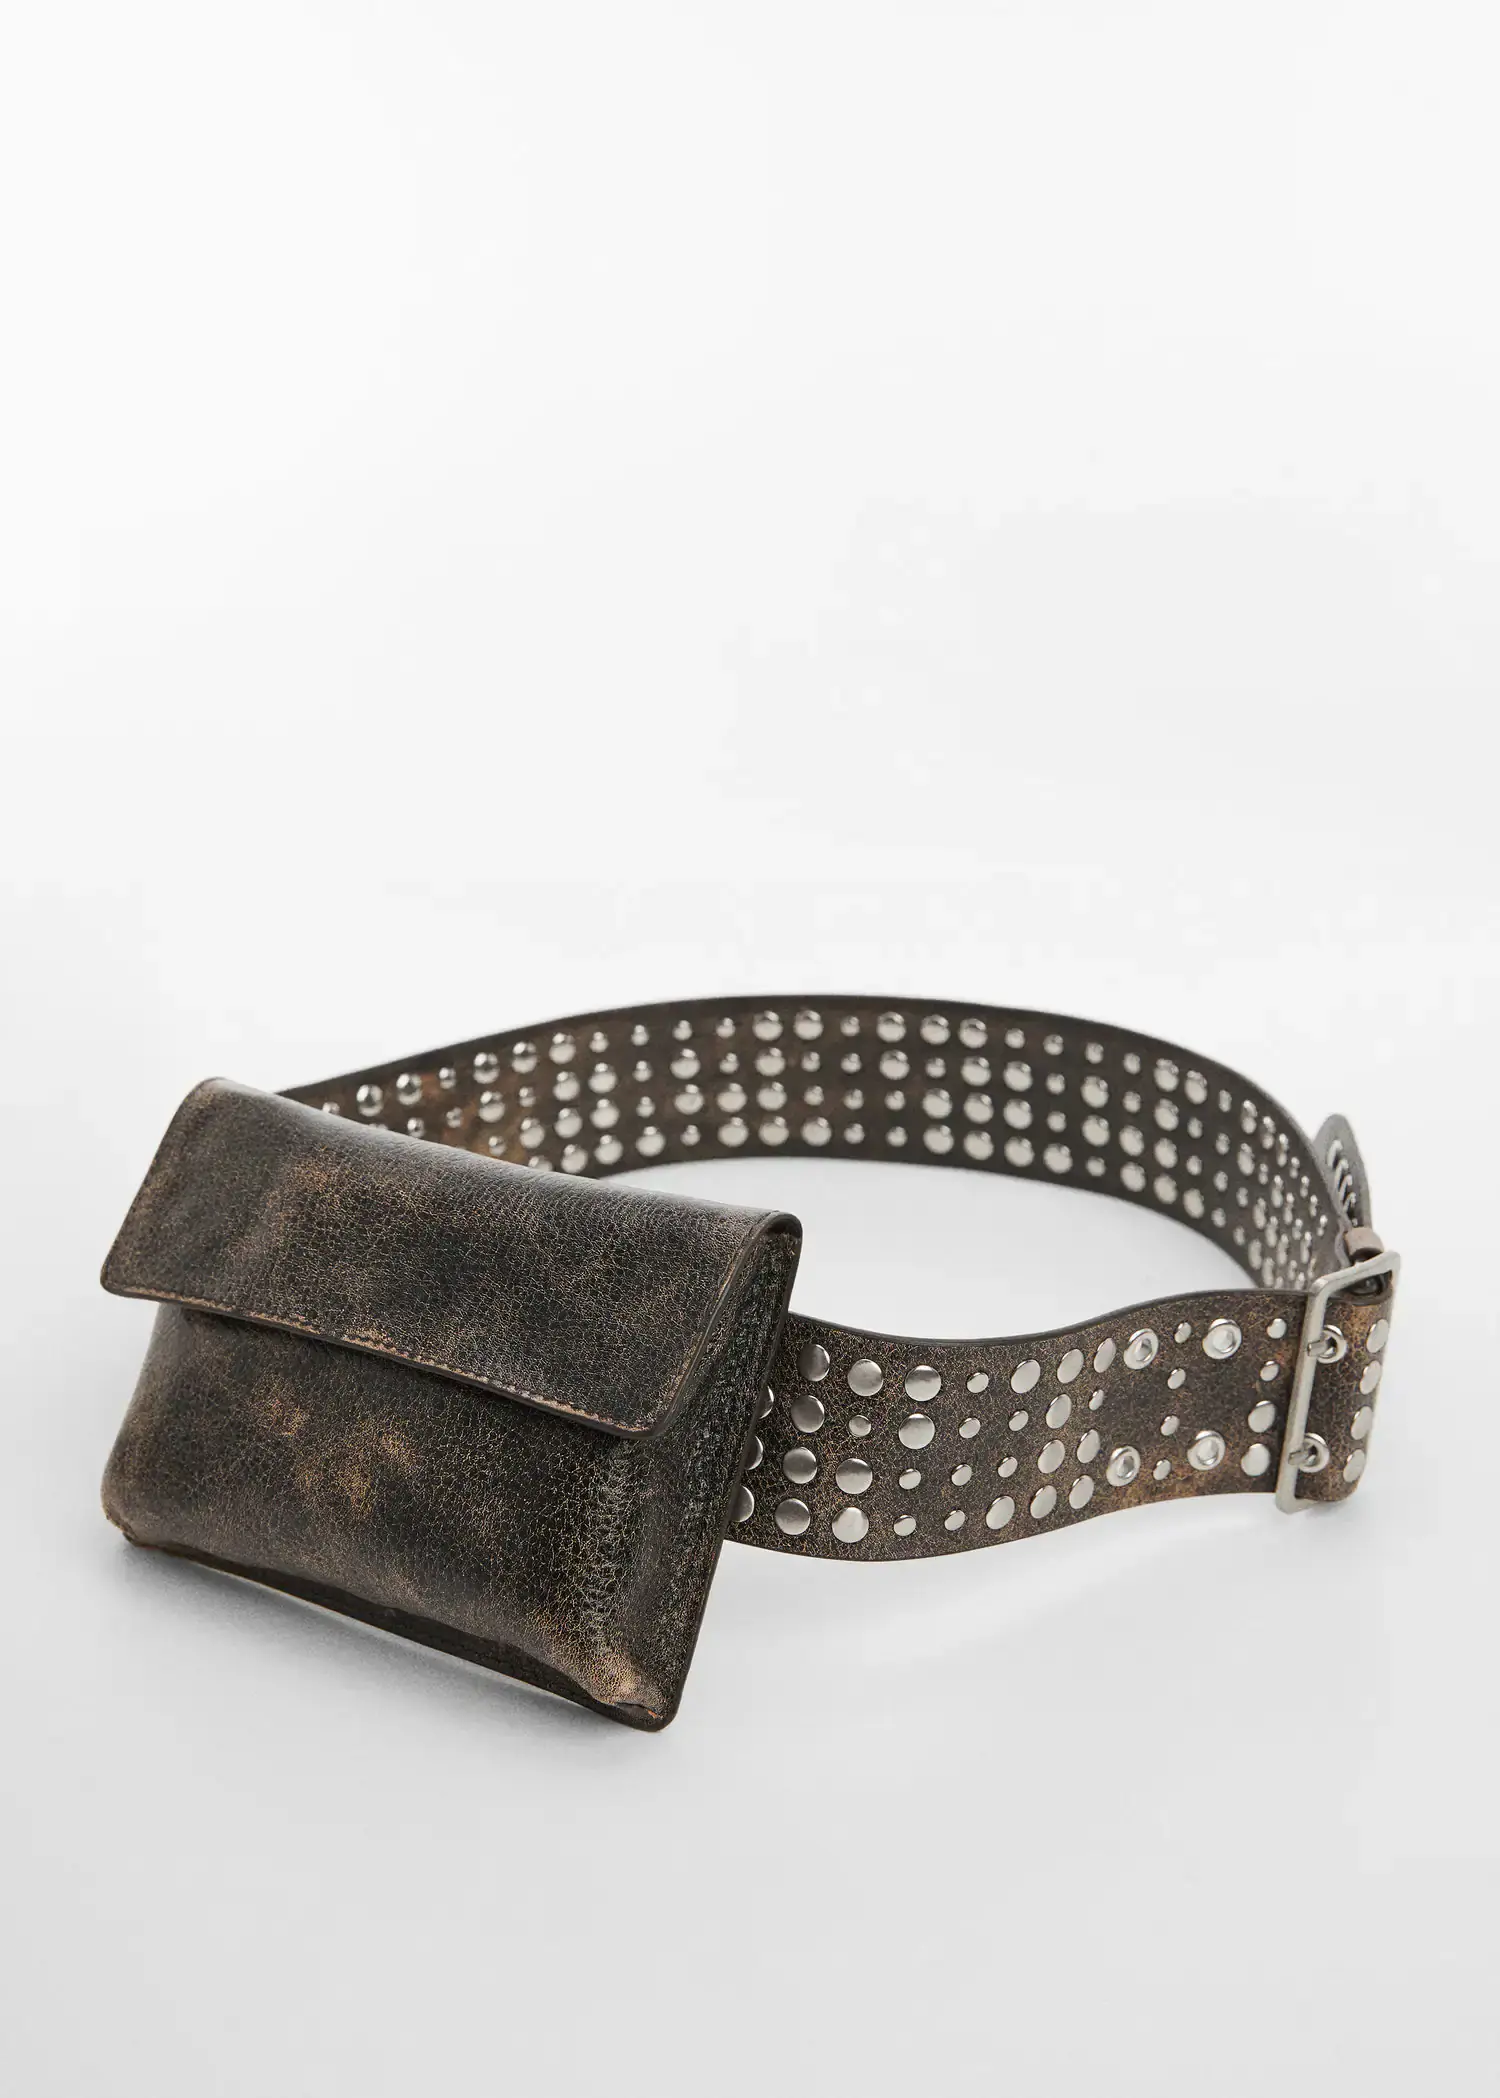 Mango Studded leather money belt. 1